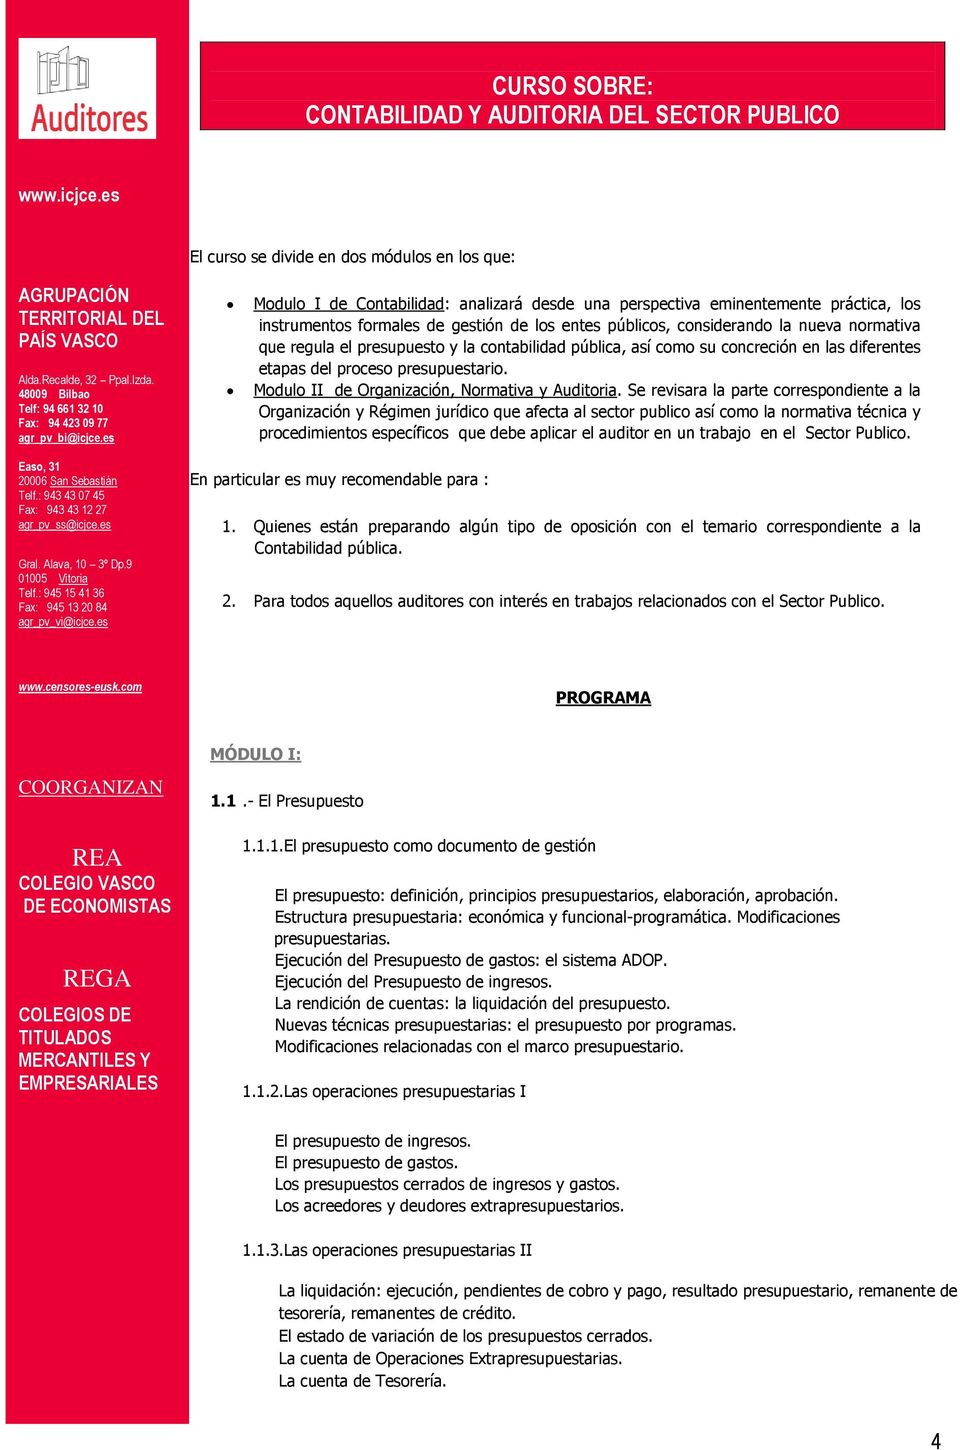 Modulo II de Organización, Normativa y Auditoria.